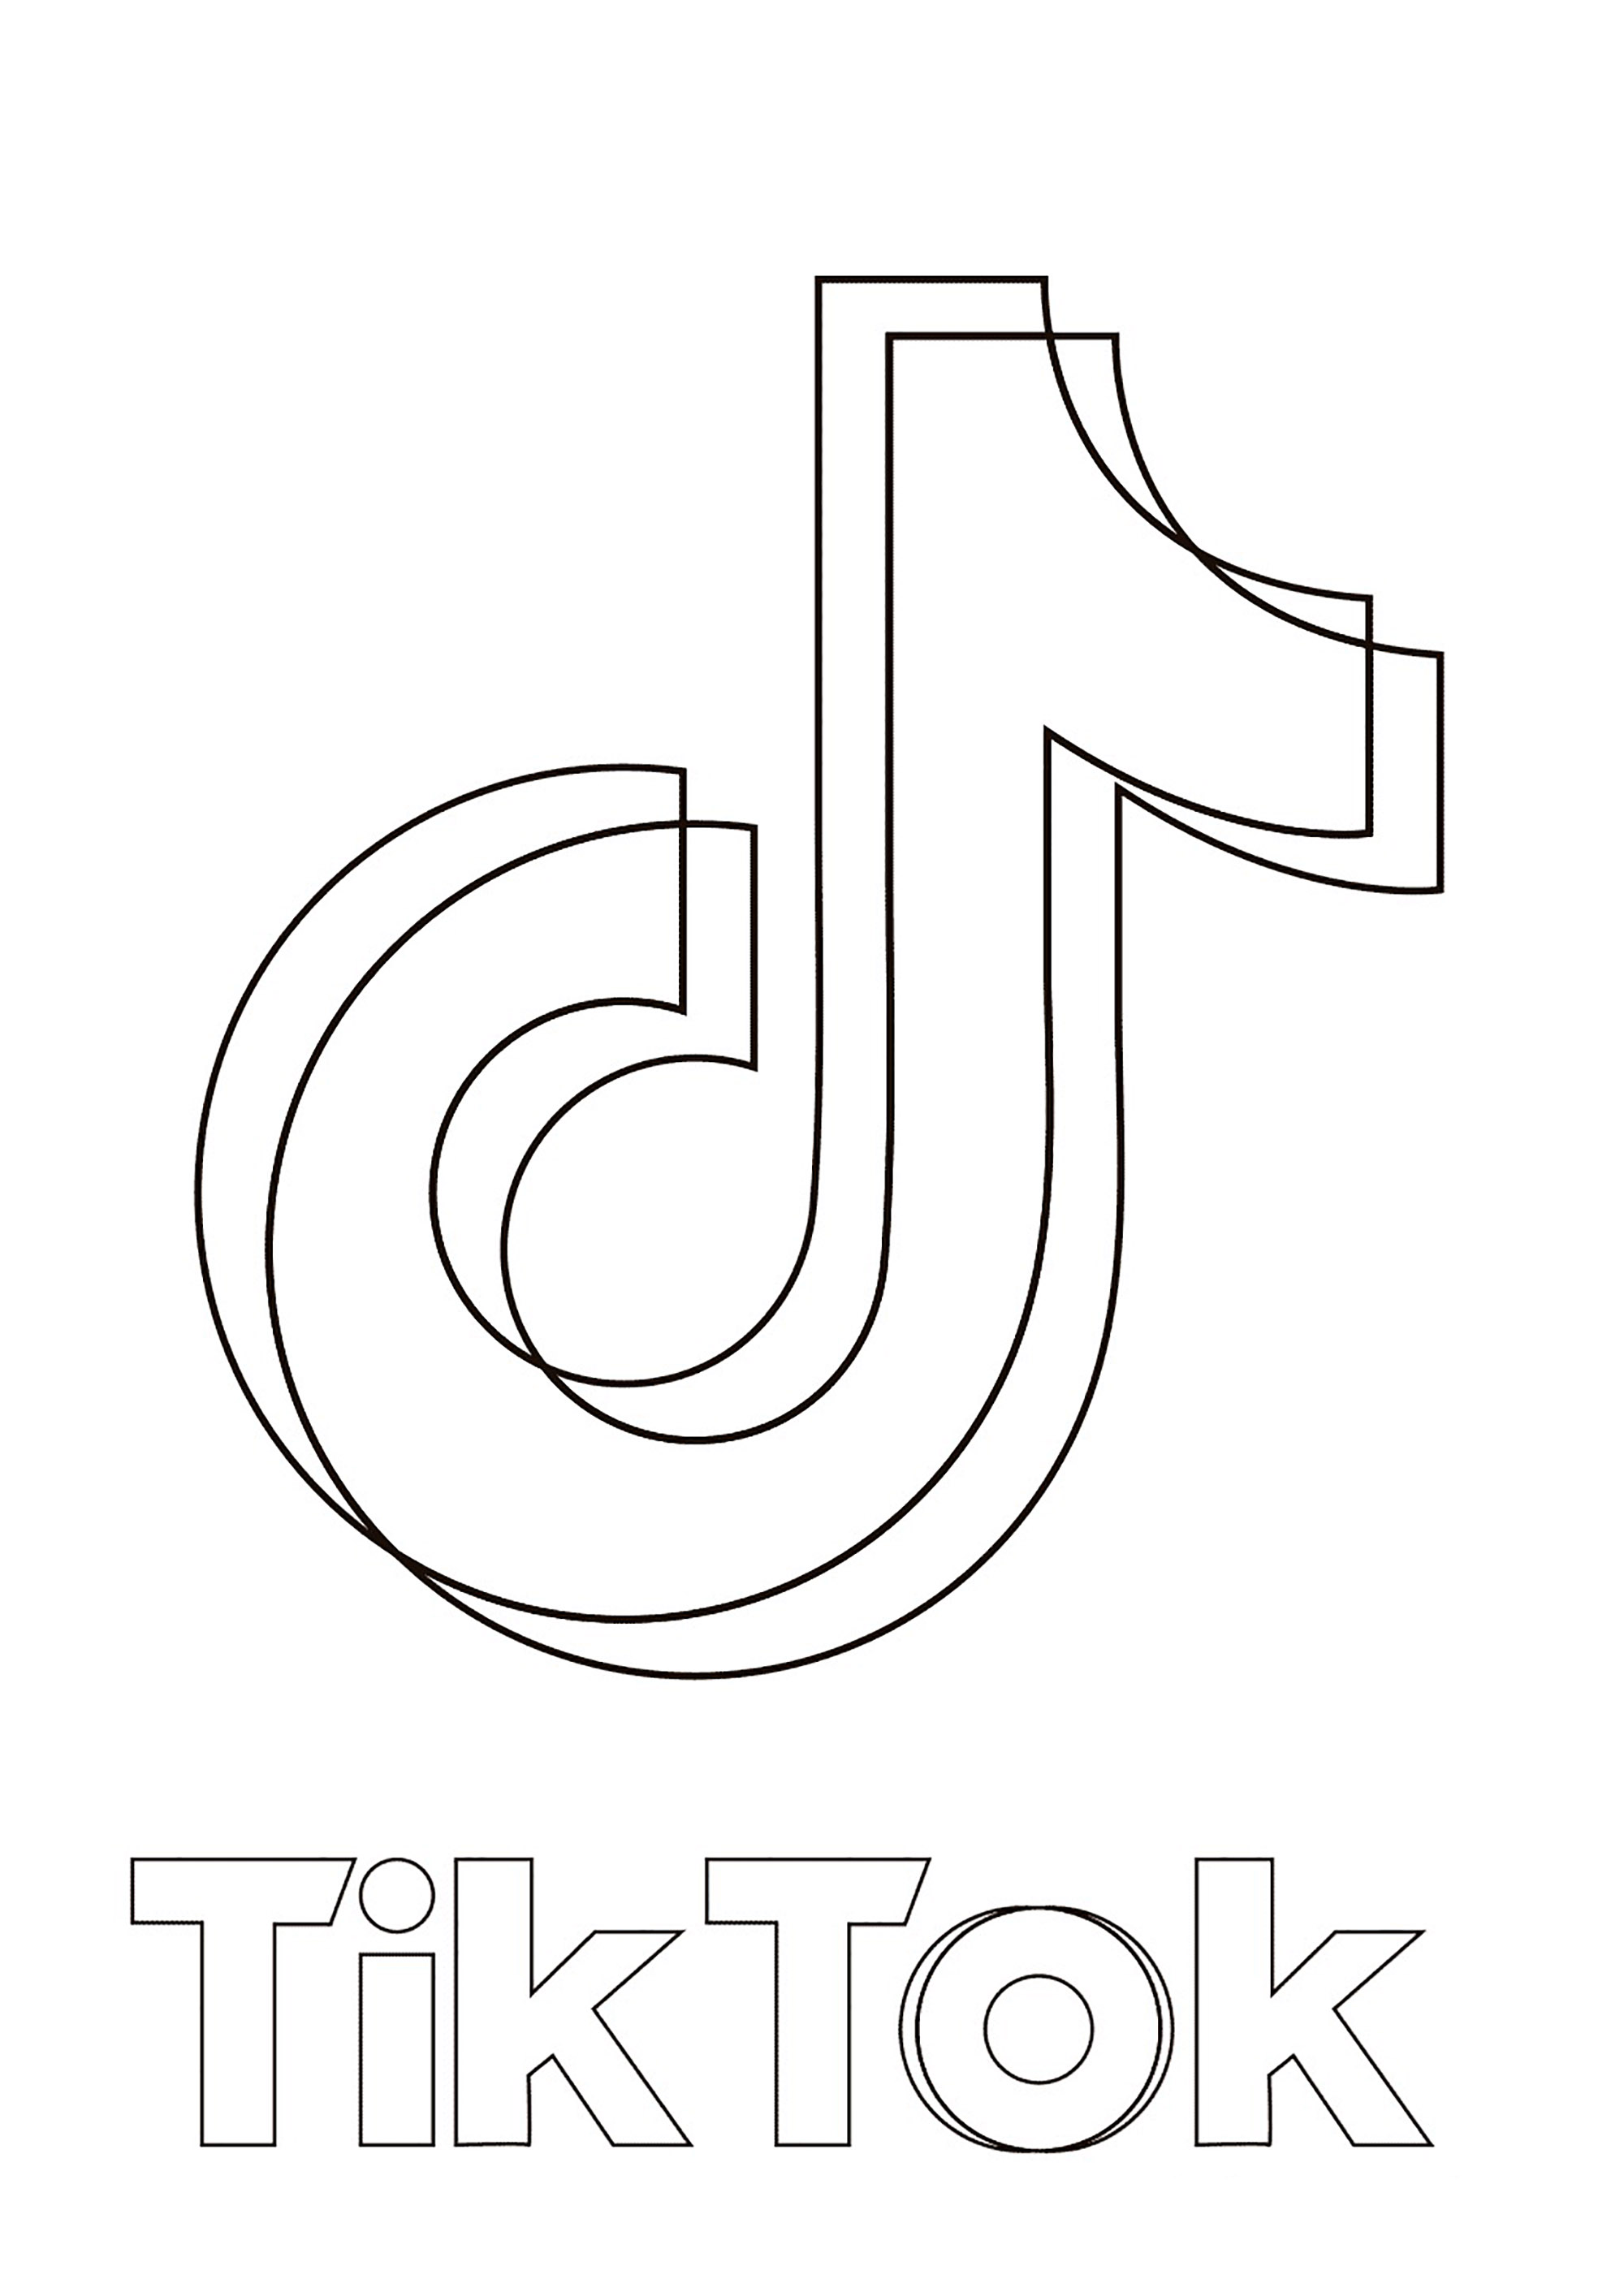 Logotipo de Tik Tok en color. Tik. Tok es una aplicación móvil para compartir vídeos y redes sociales lanzada en septiembre de 2016. Está desarrollada por la empresa china Byte. Dance